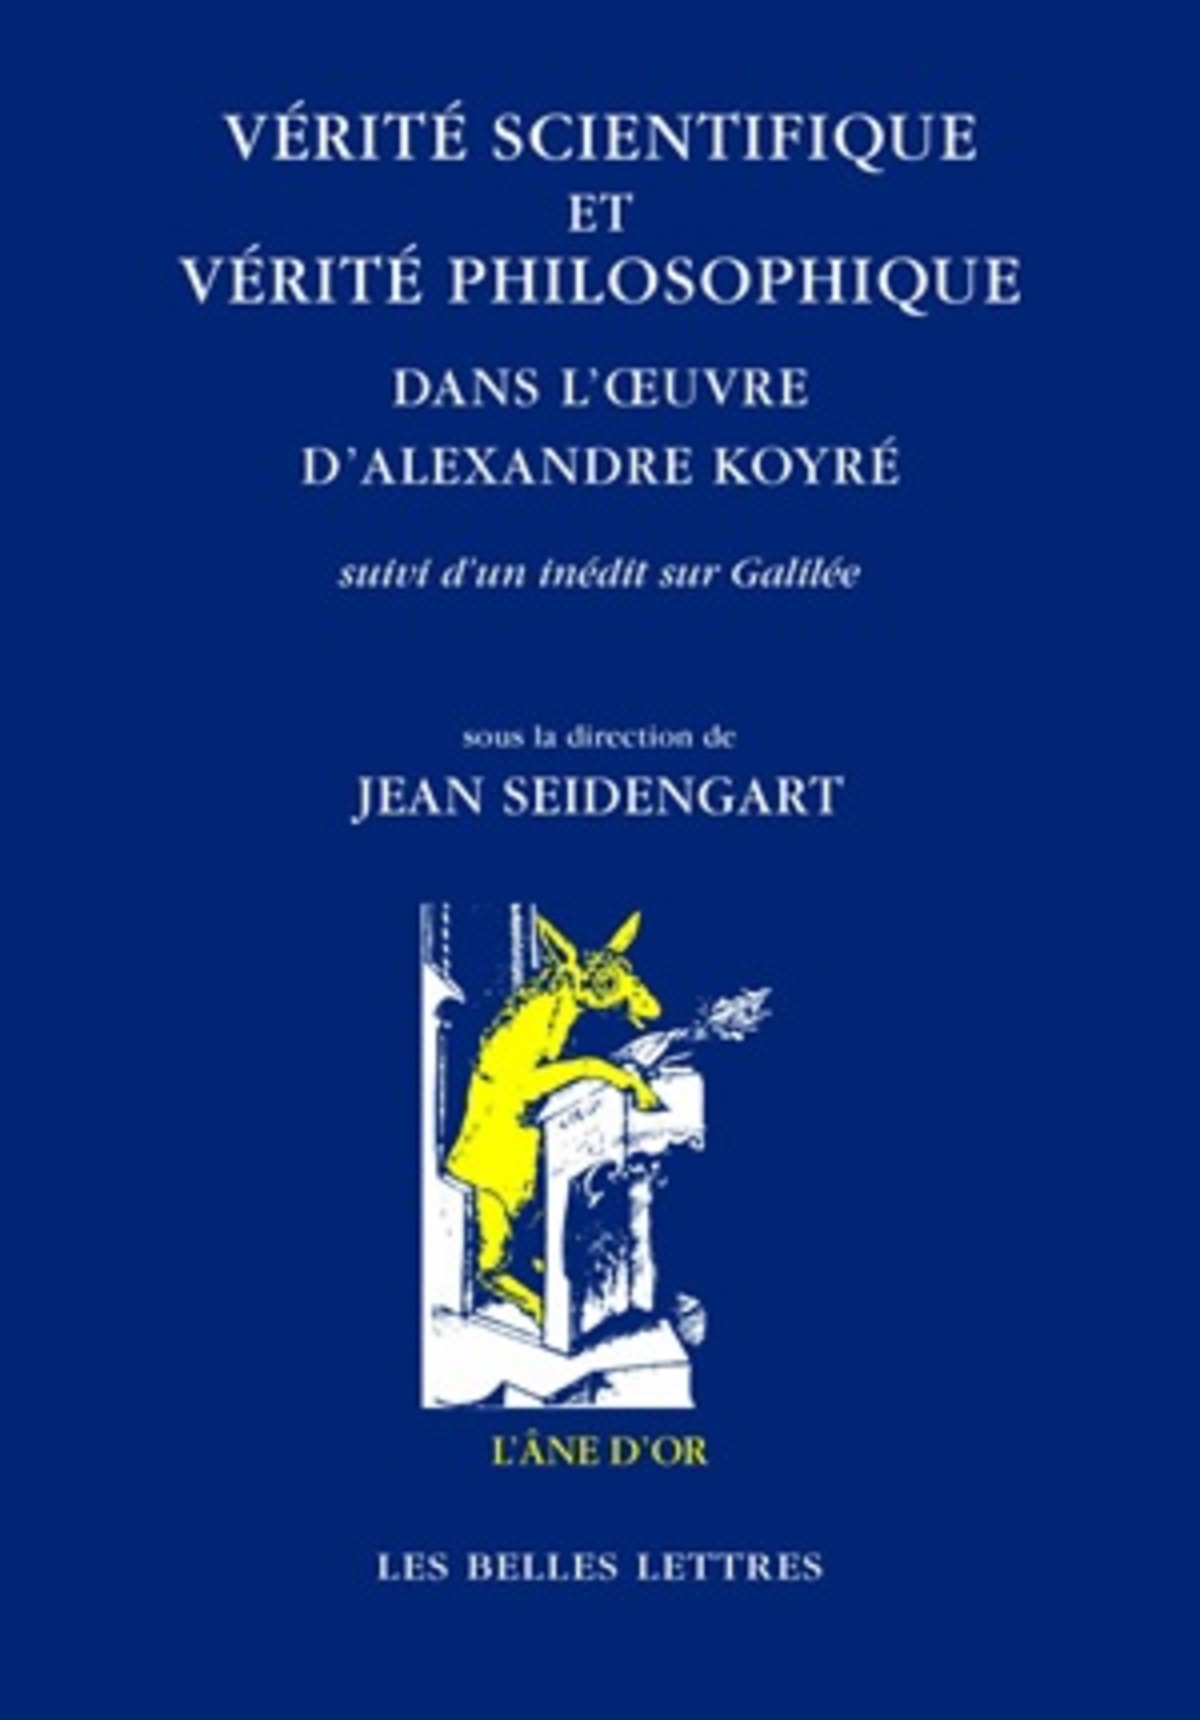 Vérité scientifique et vérité philosophique dans l'œuvre d'Alexandre Koyré